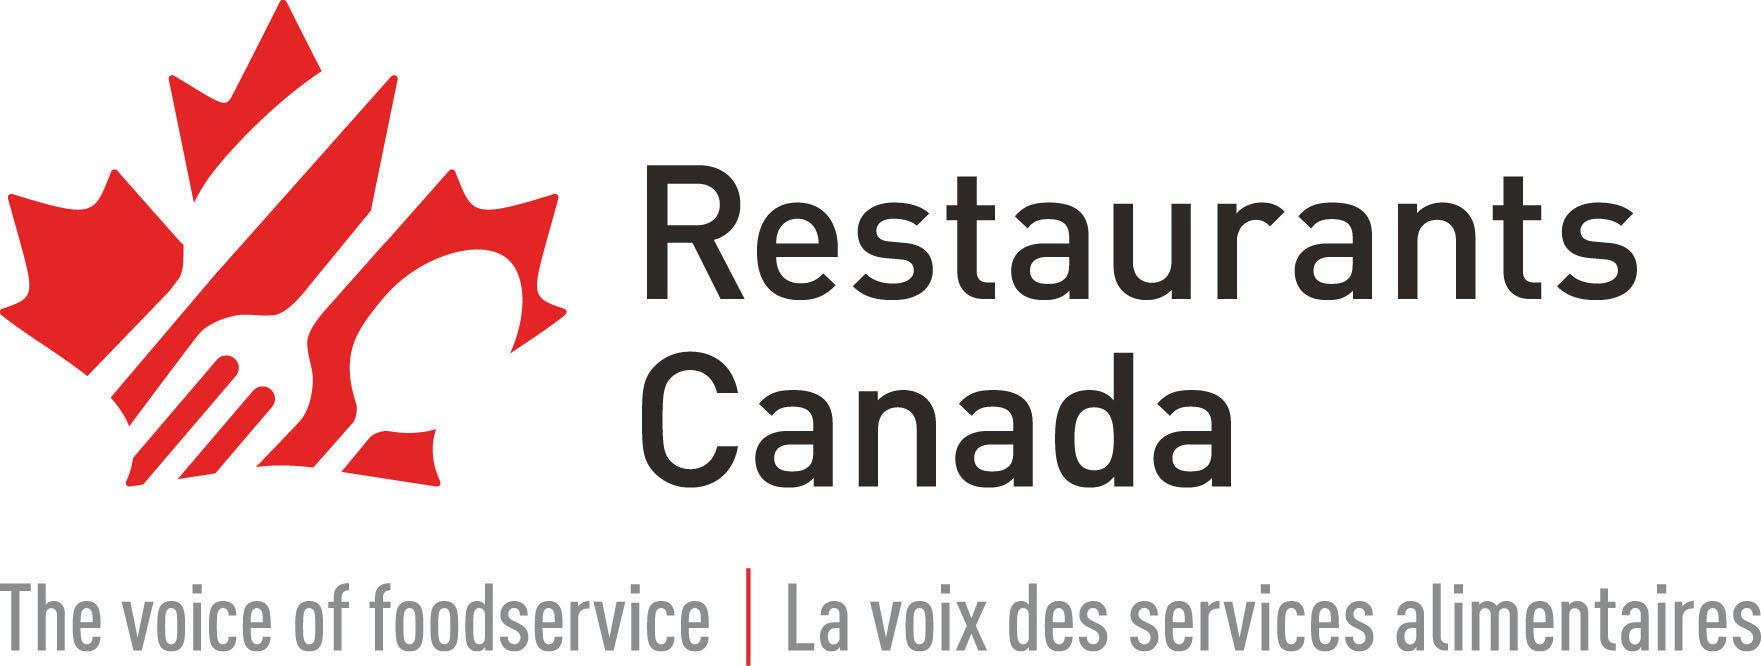 Restaurants Canada D